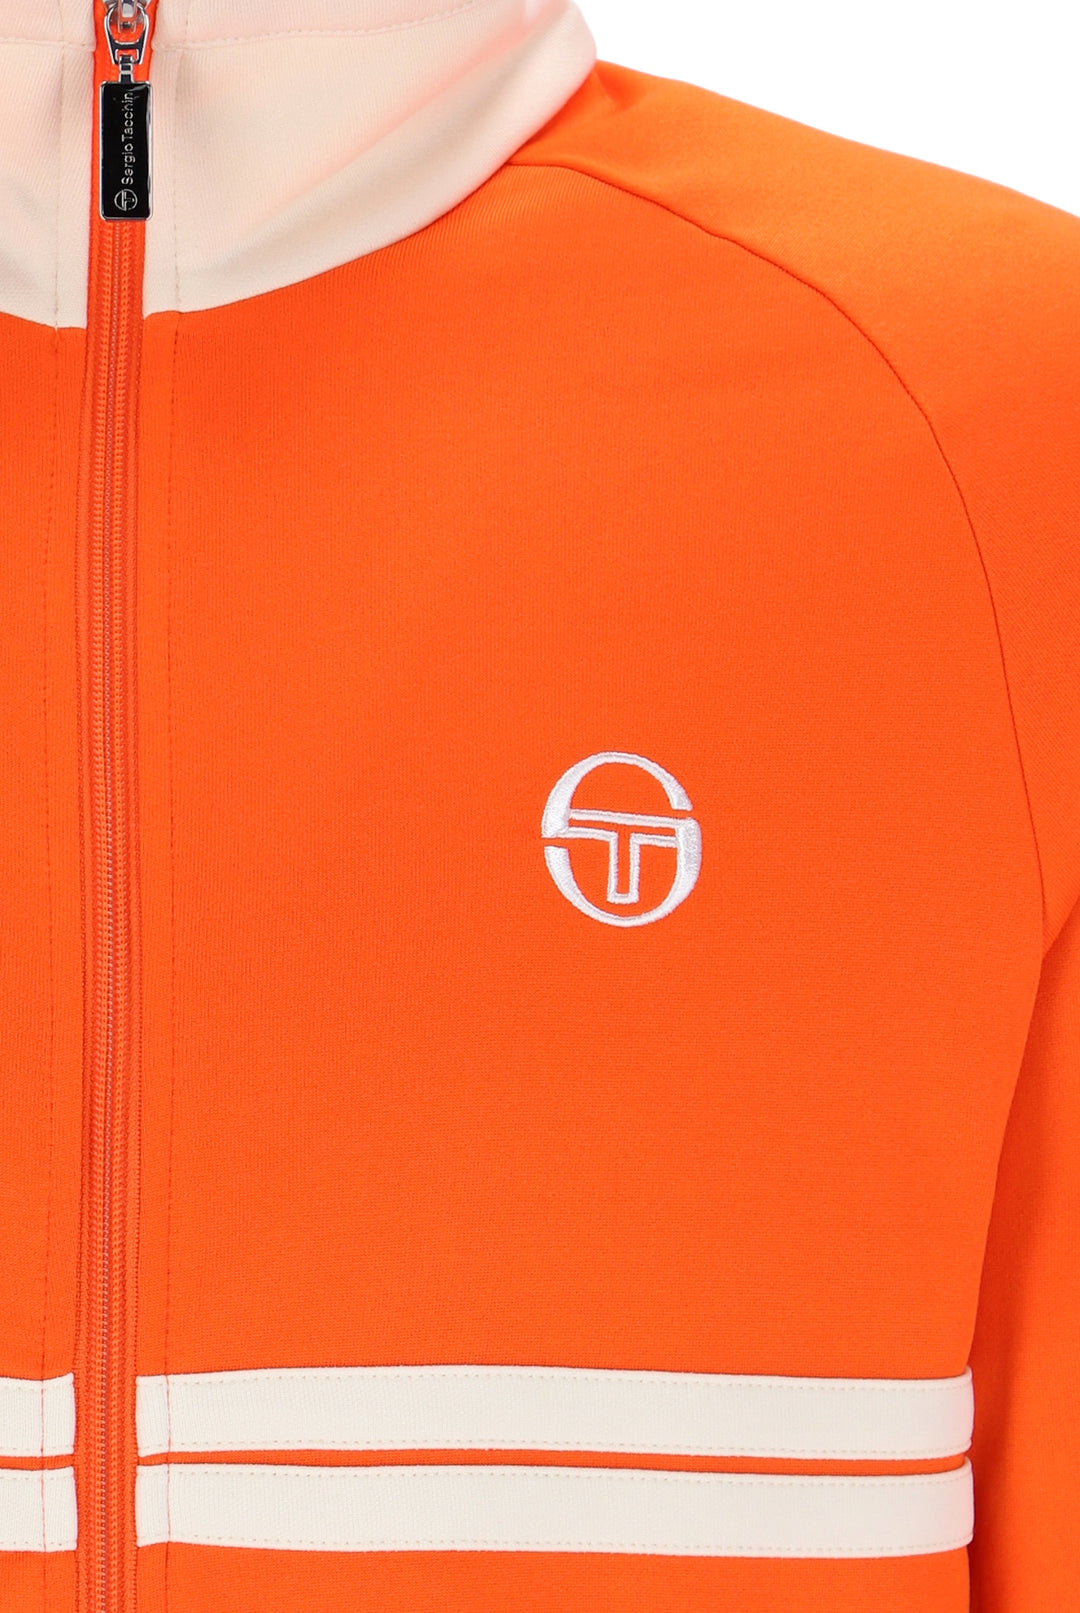 Sergio Tacchini Dallas Track Top Orange/Cream - Urban Menswear